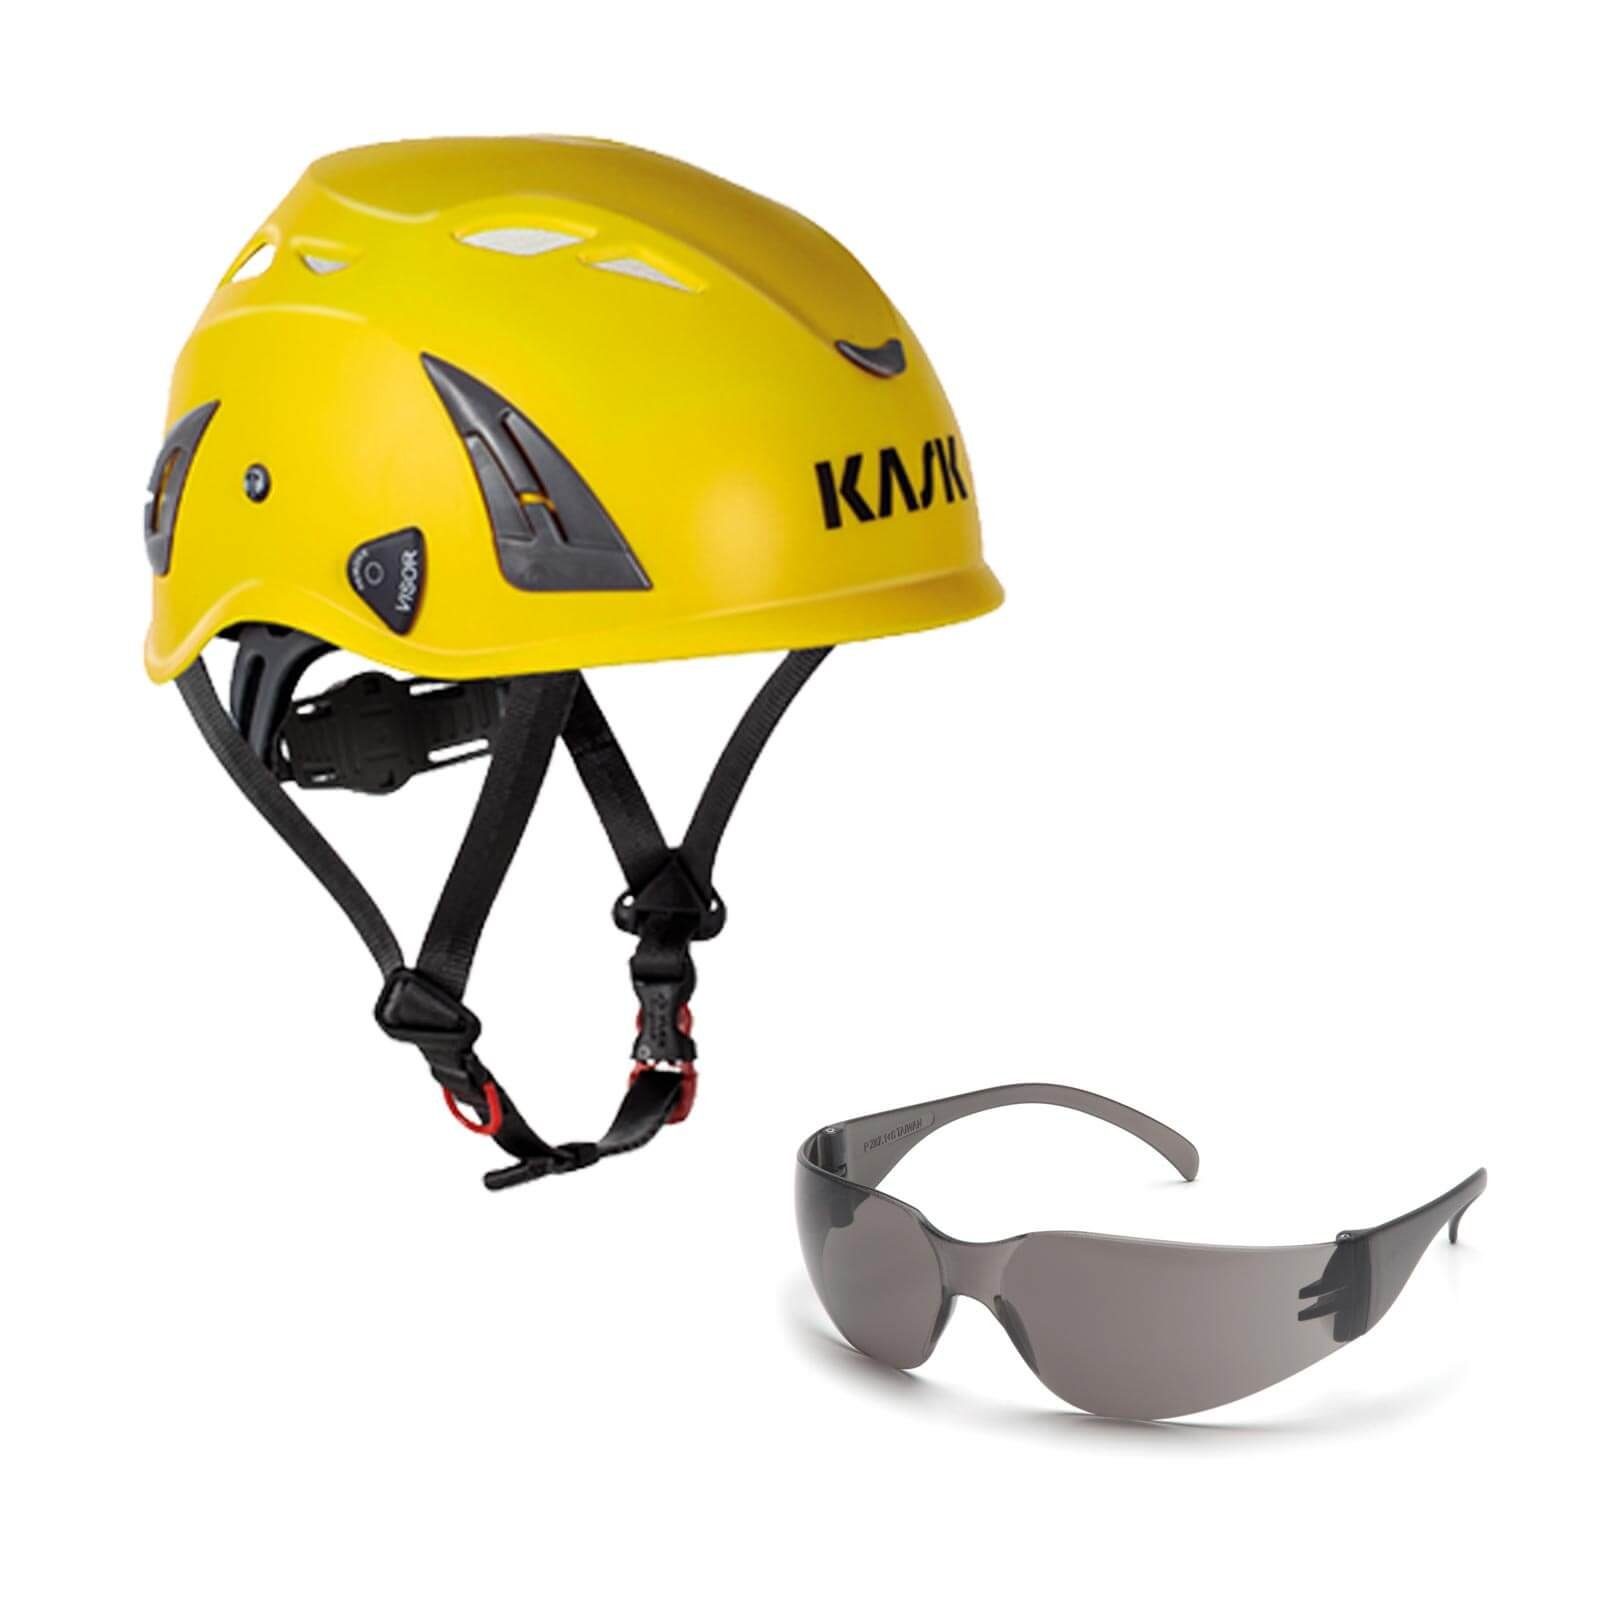 Kask Schutzhelm Bergsteigerhelm, Industriekletterhelm Plasma AQ + Schutzbrille klar gelb